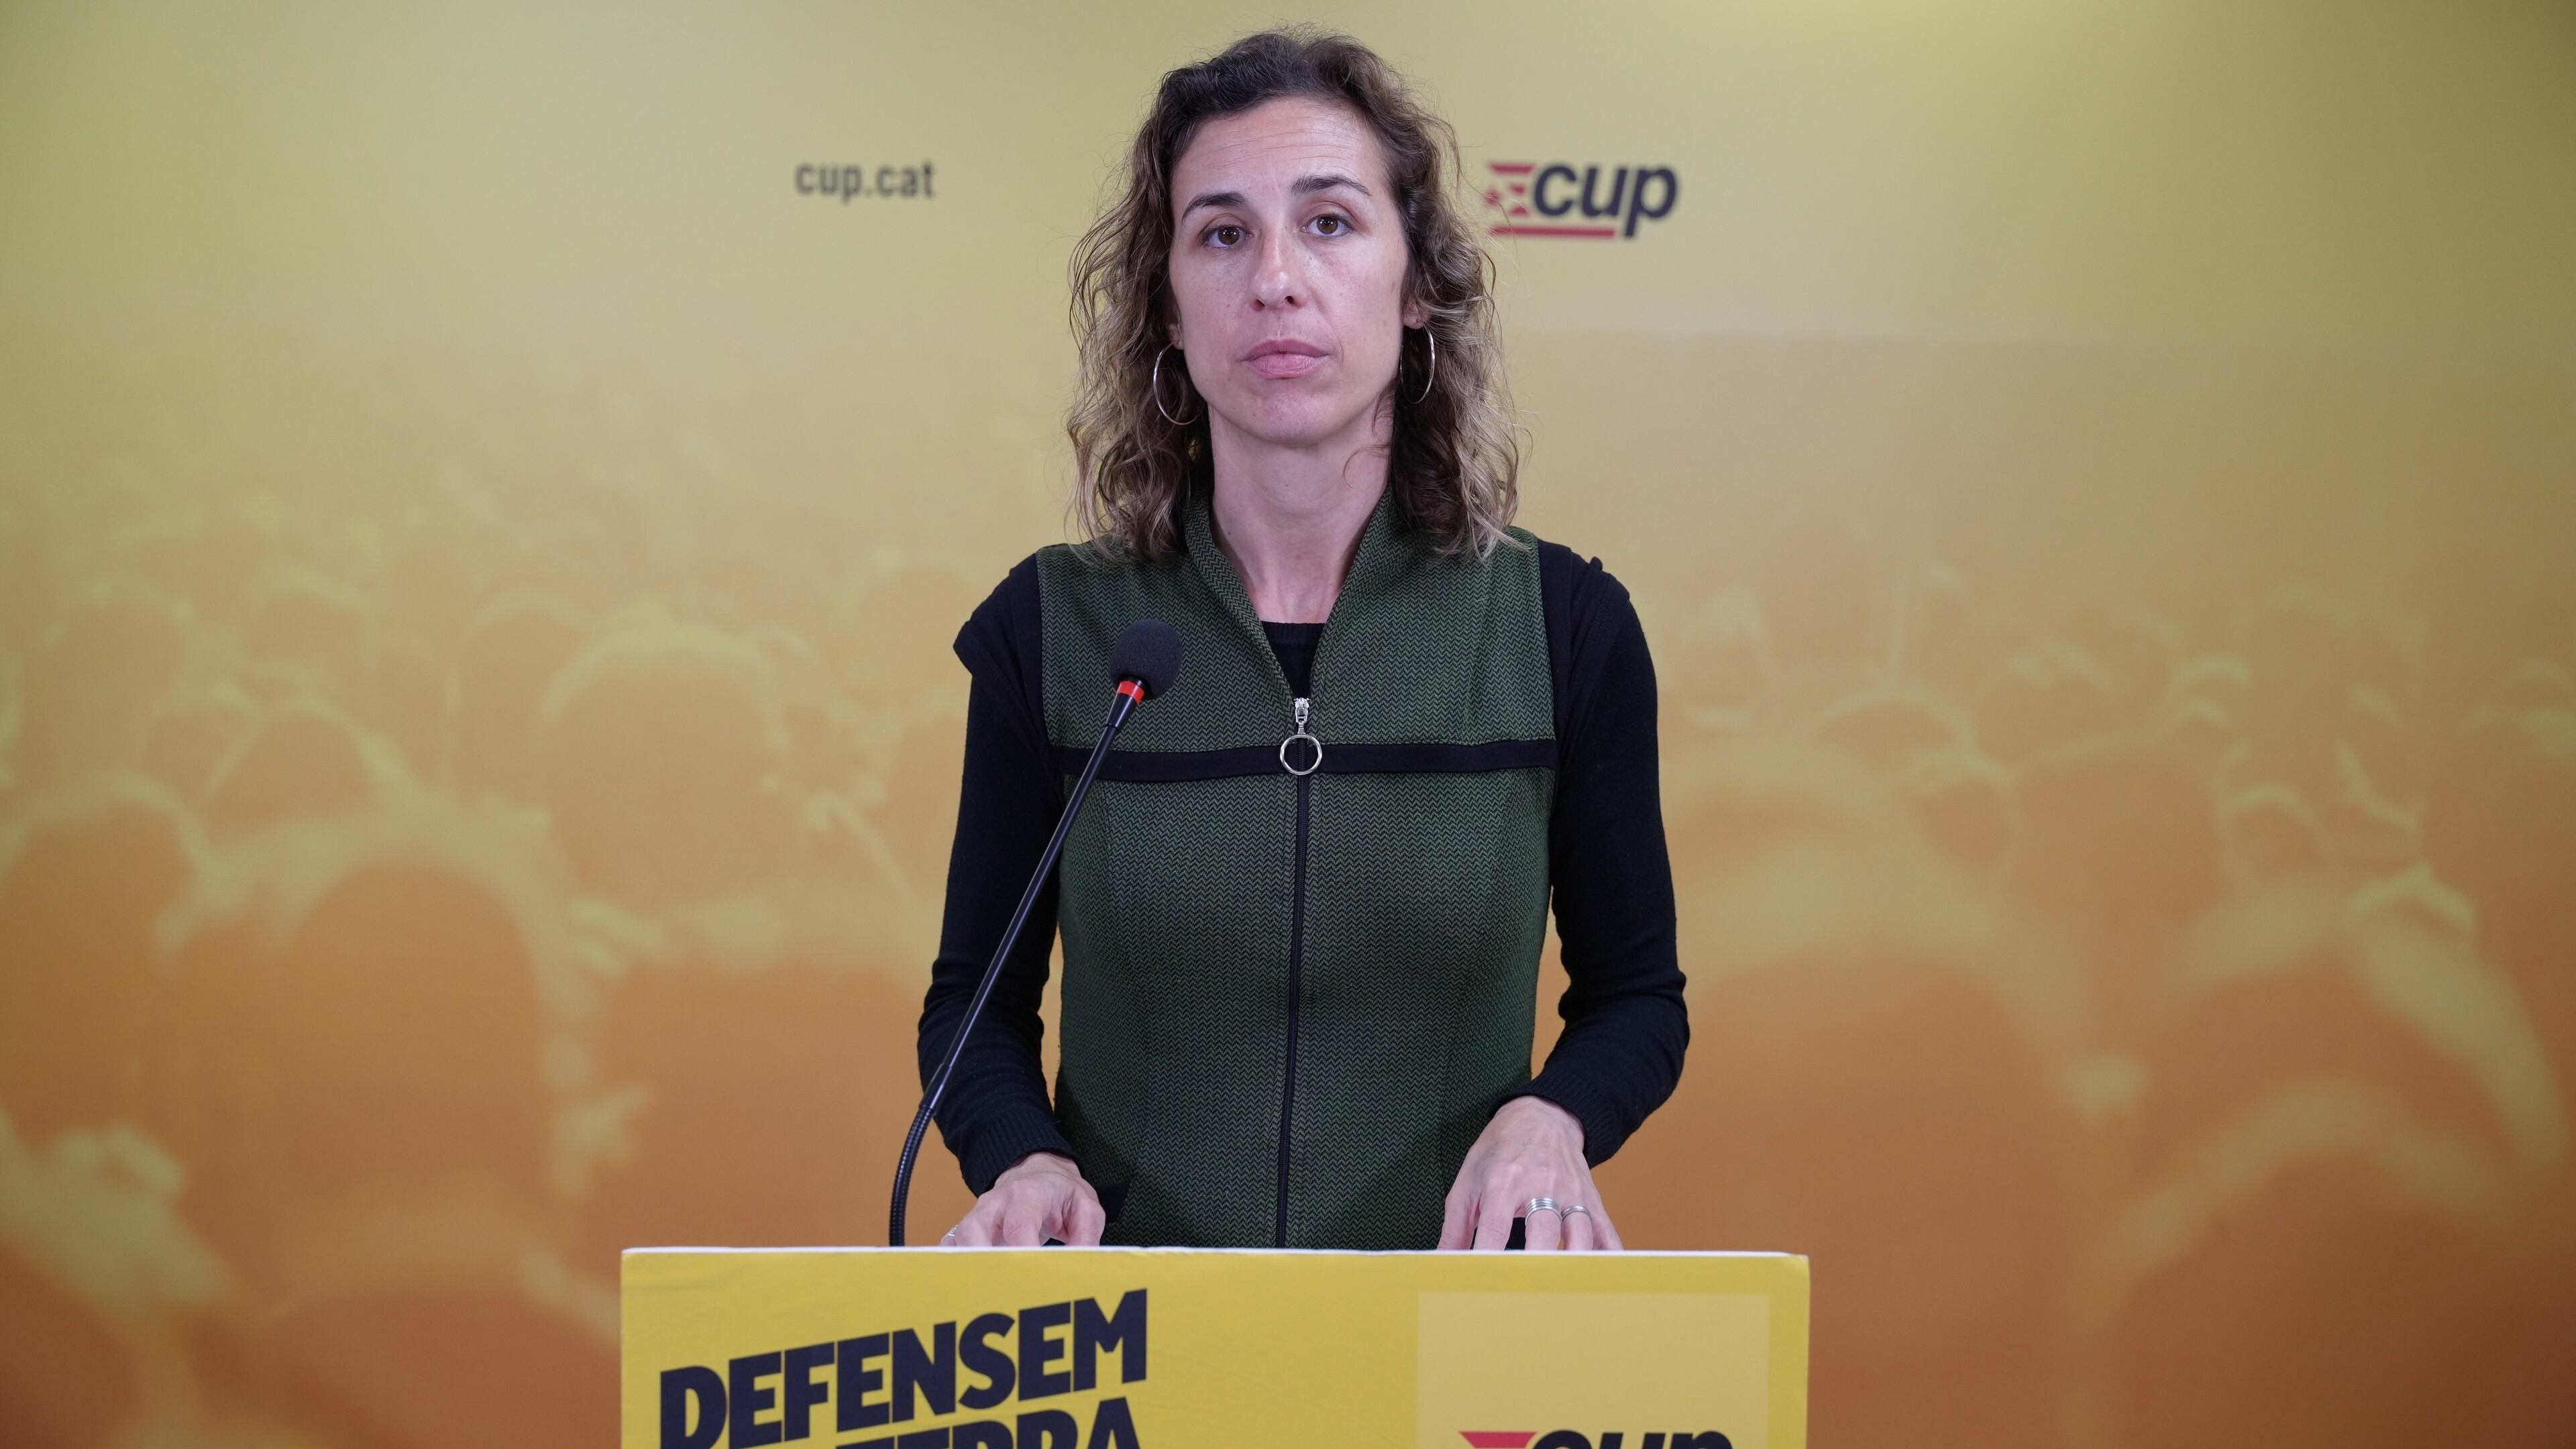 La candidata de la CUP a las elecciones catalanas, Laia Estrada, en una rueda de prensa en la sede de su partido, el 29 de abril de 2024.

Acusa a los socialistas de infiltrar policías en movimientos sociales y espiar a sus adversarios

POLITICA 
CUP